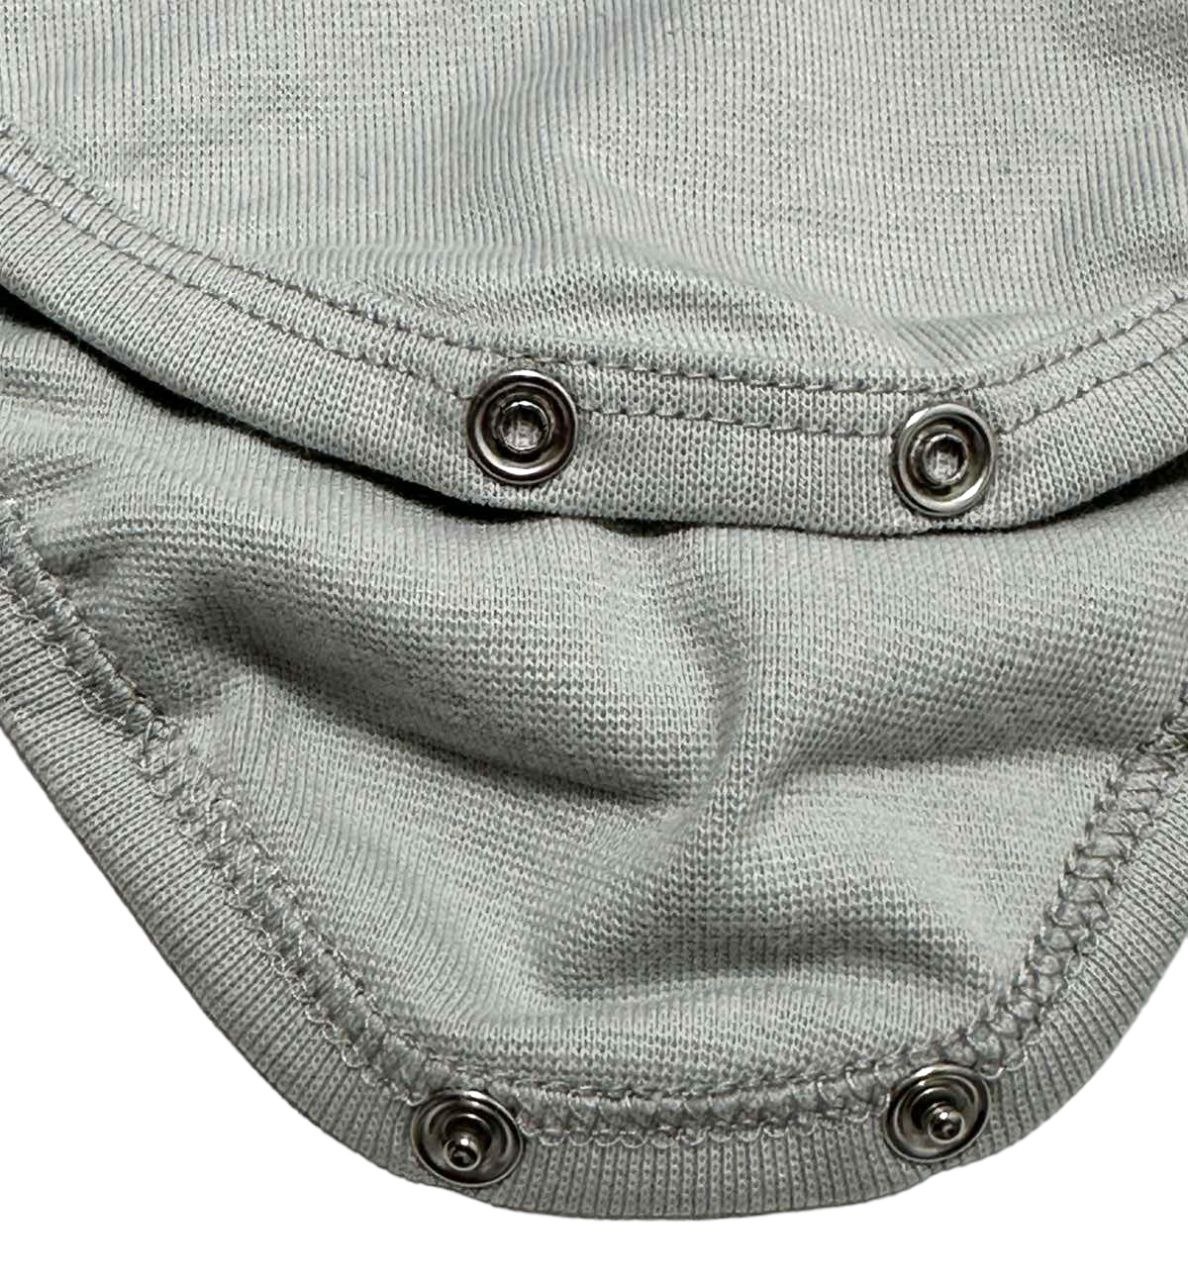 Комплект боді із брючками начесний стрейч інтерлок сірого кольору, Сірий, 12-18 місяців, 86см